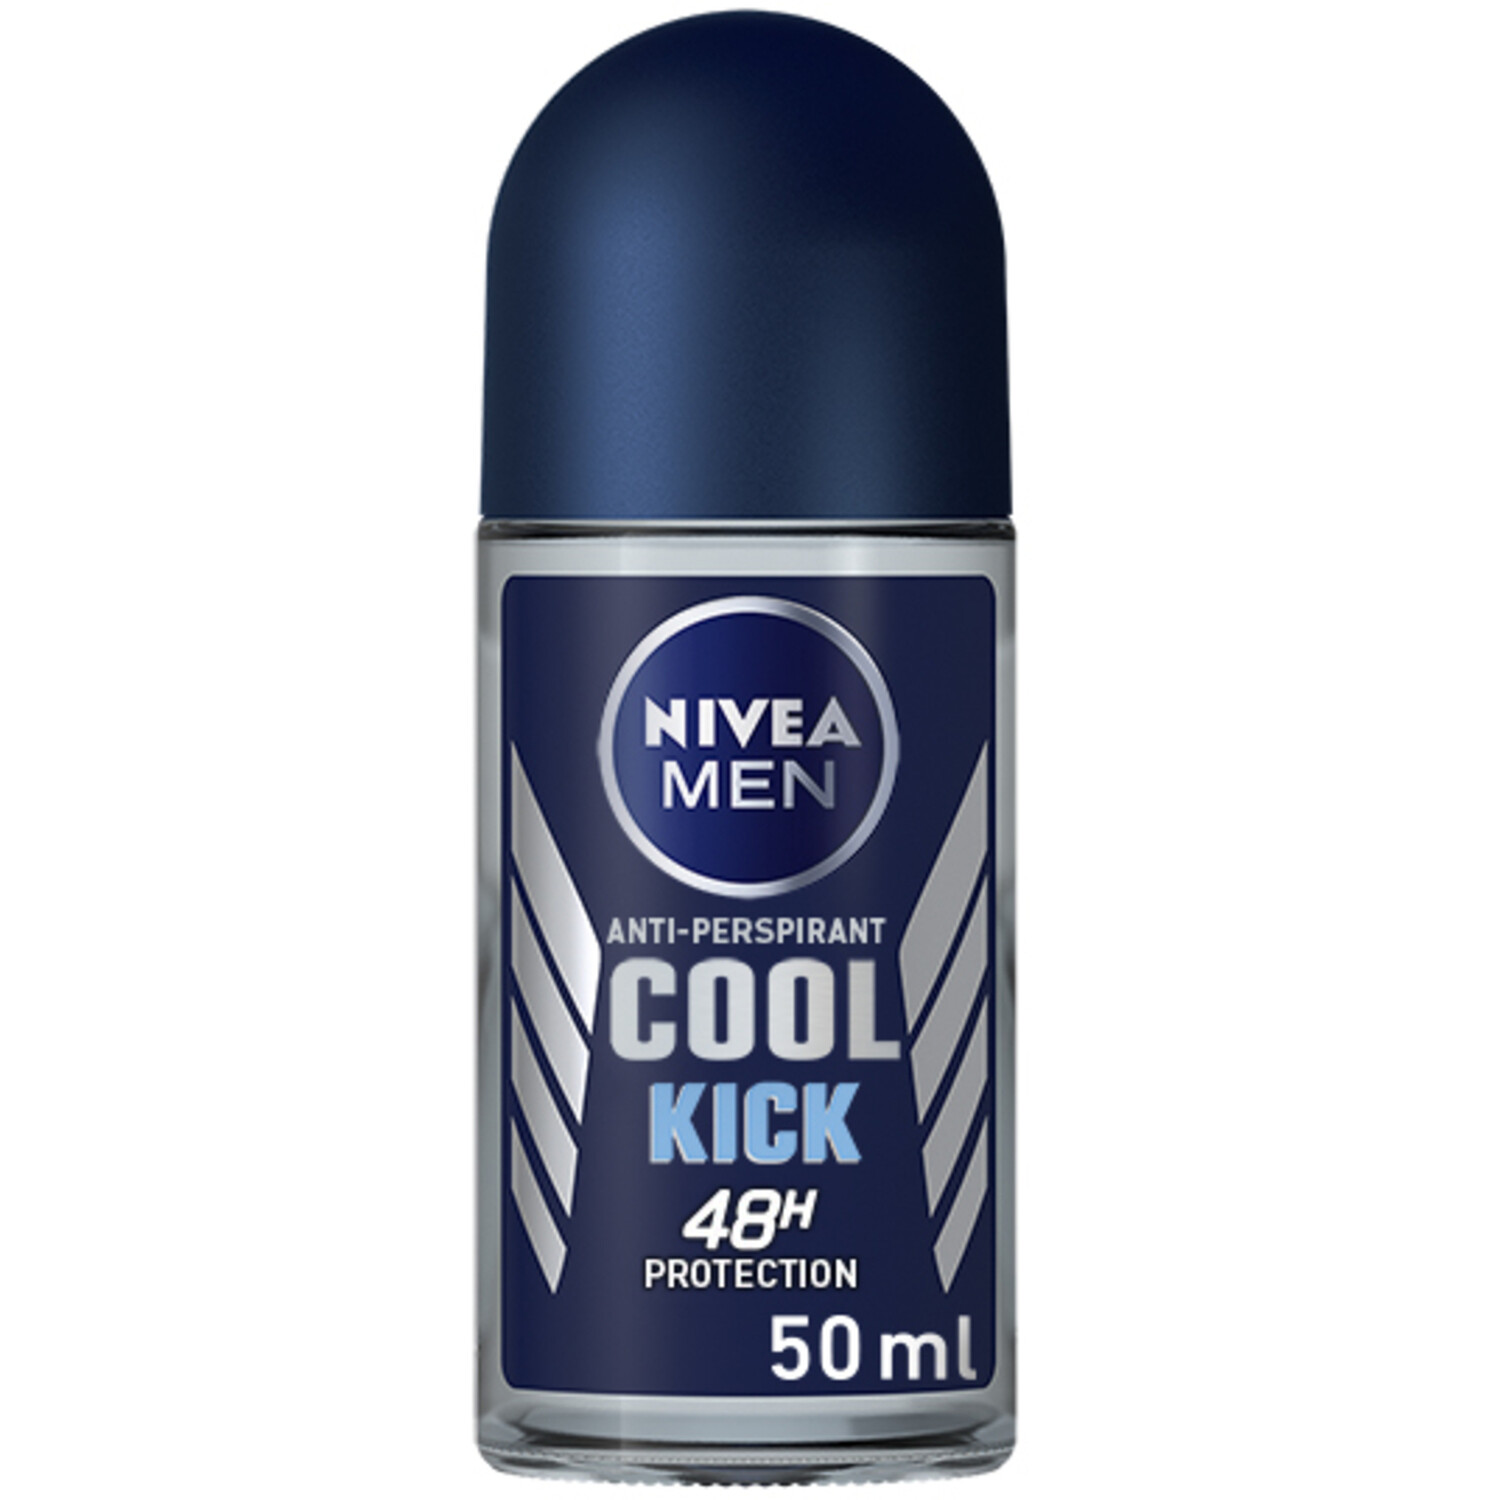 Nivea Men Cool Kick Anti-Perspirant Deodorant 50ml - Navy Image